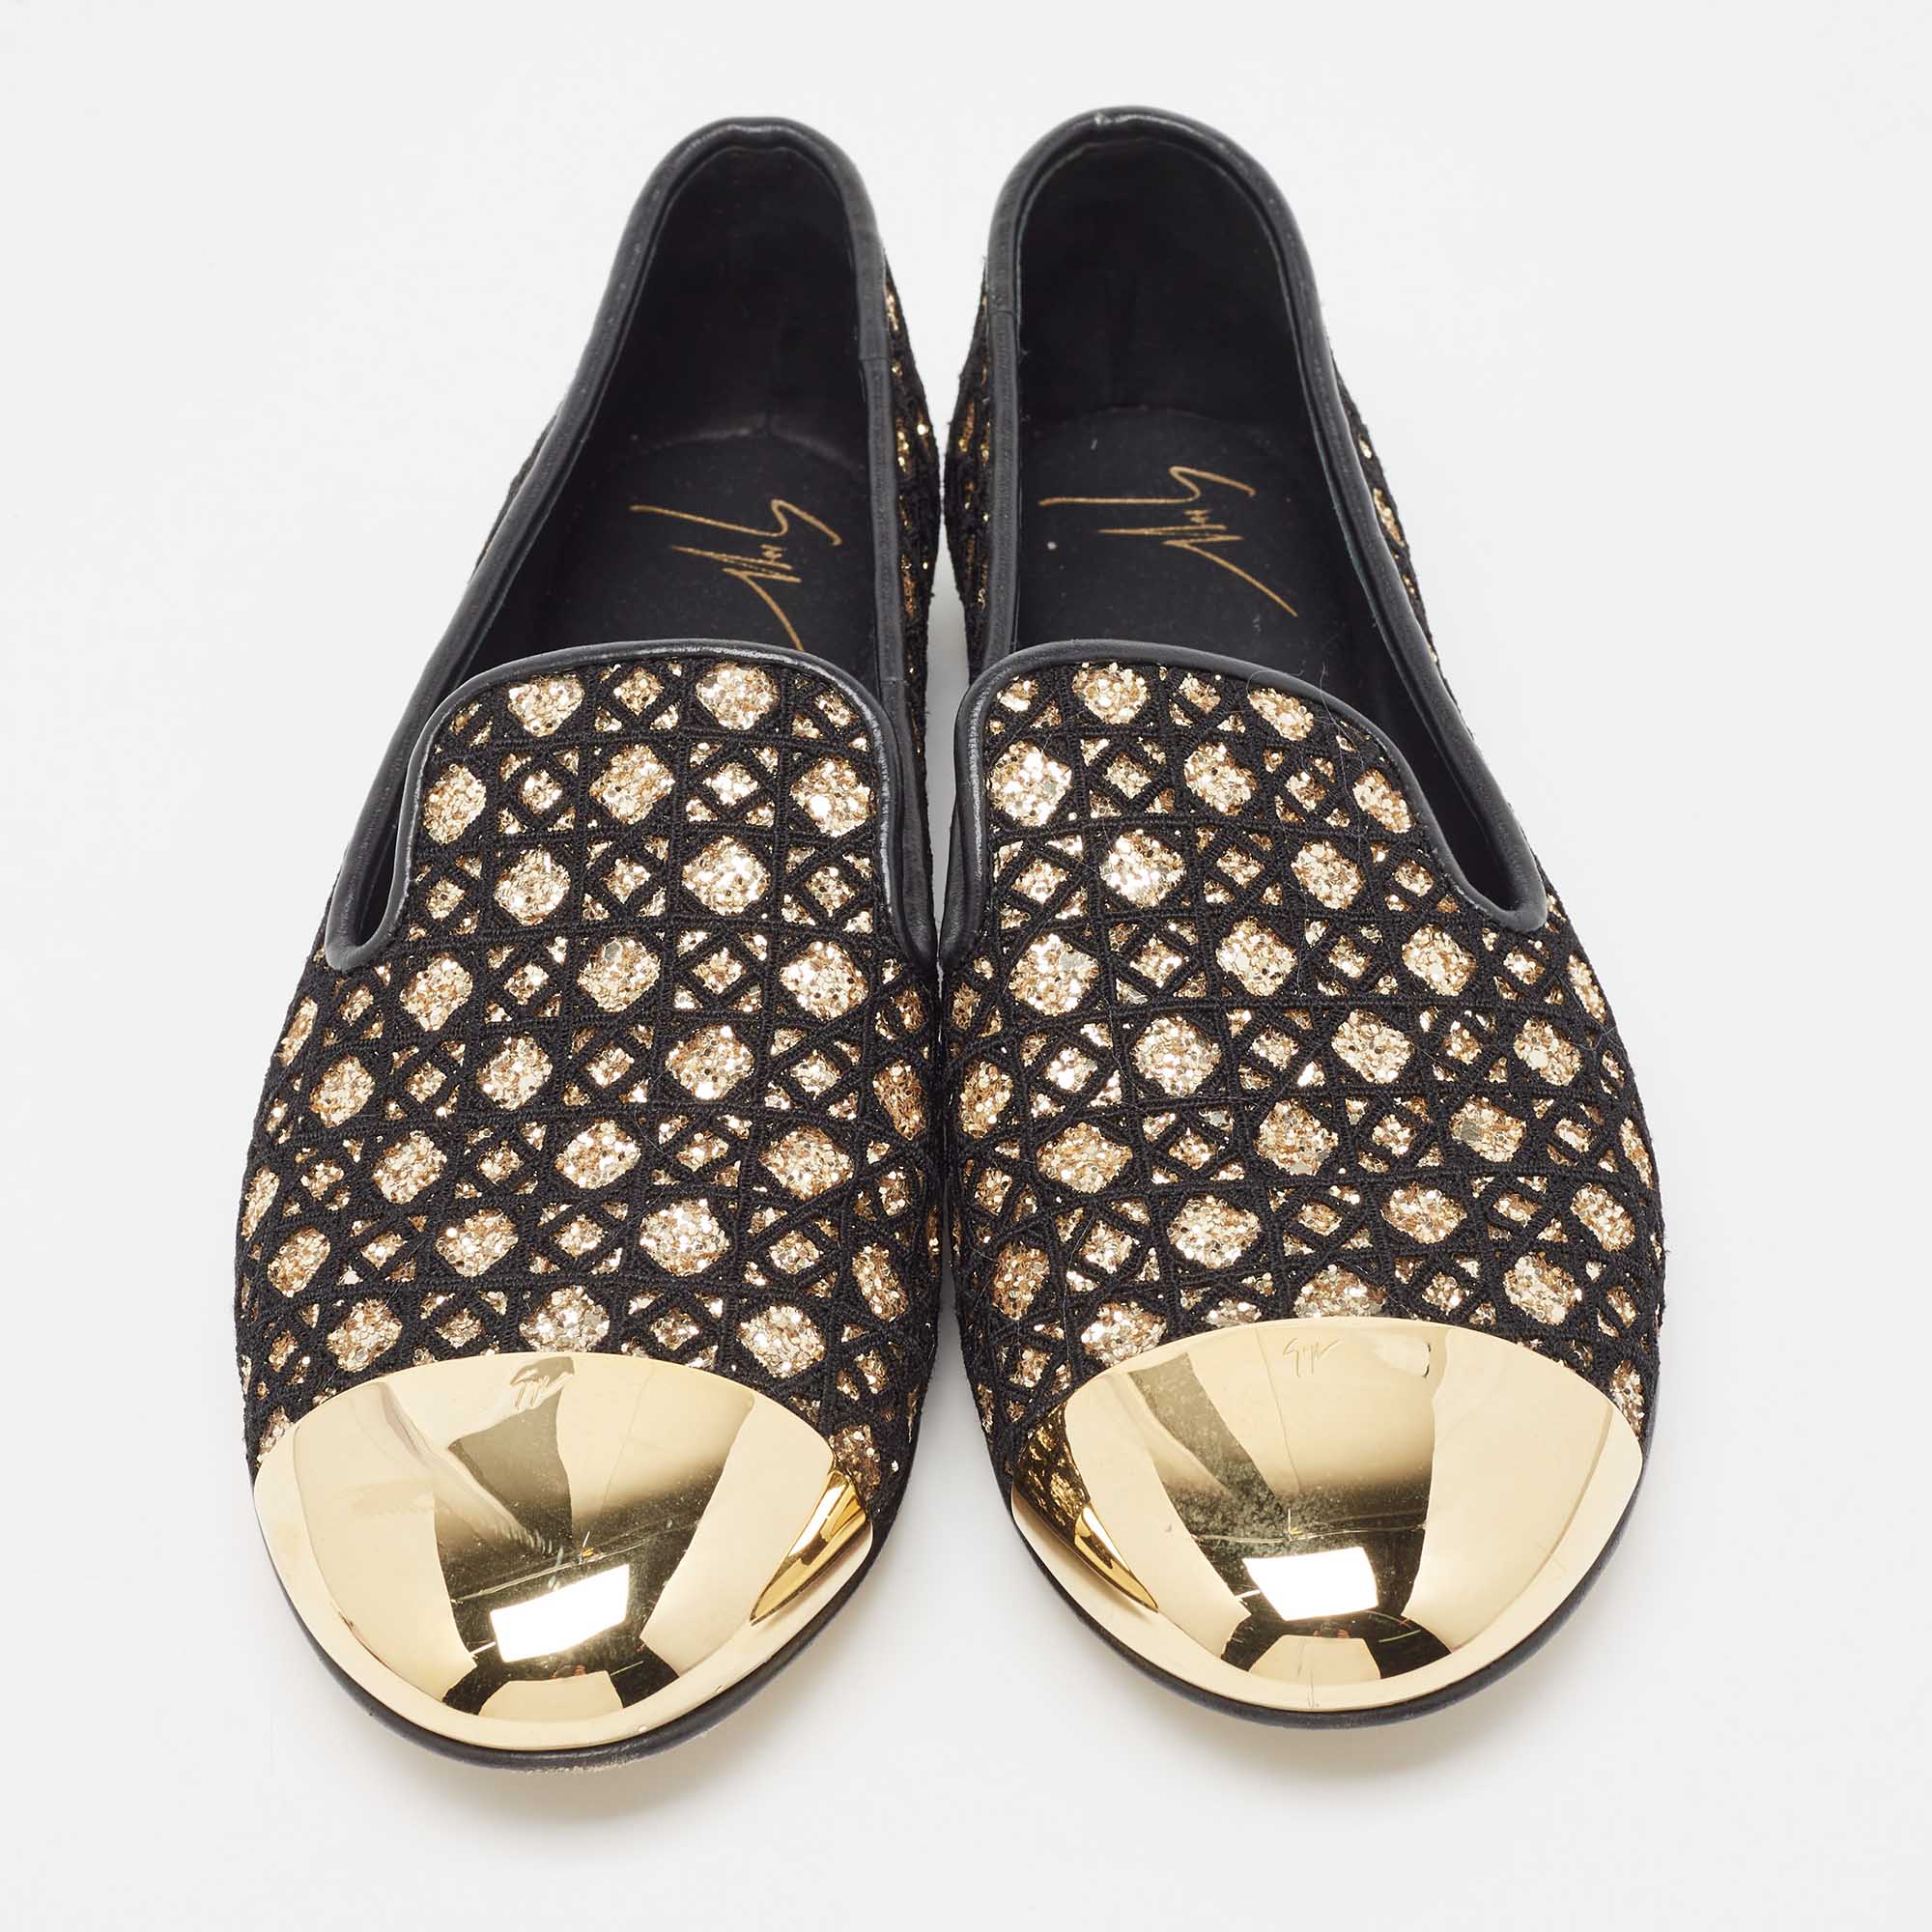 Giuseppe Zanotti Black Glitter And Leather Smoking Slippers Size 39